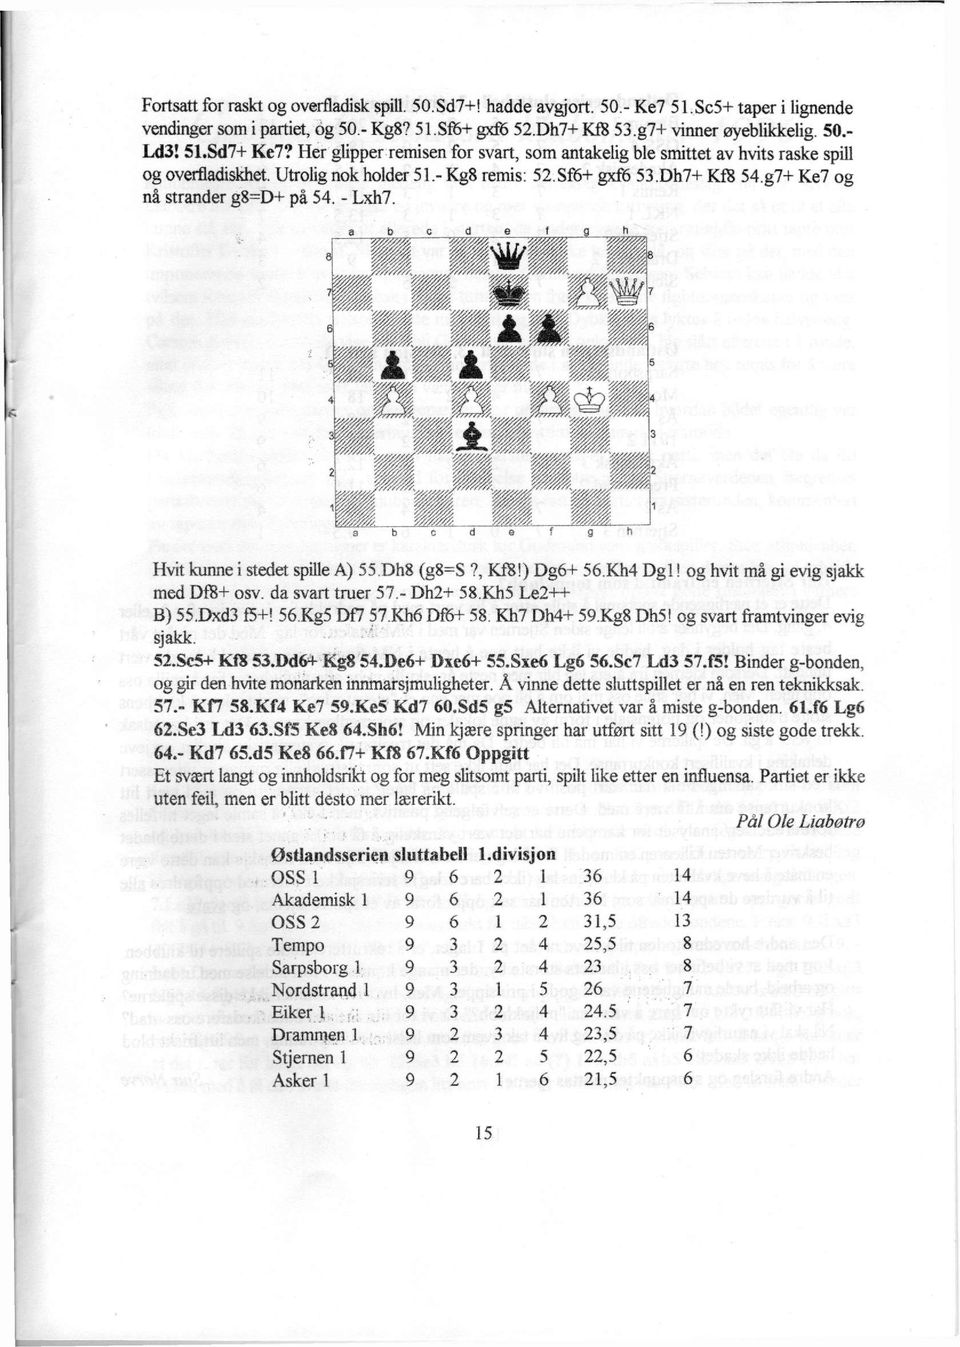 g7+ Ke7 og nå strander g8=d+ på 54. - Lxh7. a b c d e f g h Hvit kunne i stedet spille A) 55Dh8 (g8=s?, Kf8!) Dg6+ 56Kh4 Dgl! og hvit må gi evig sjakk med DfB+ osv. da svart truer 57.- Dh2+ 58.